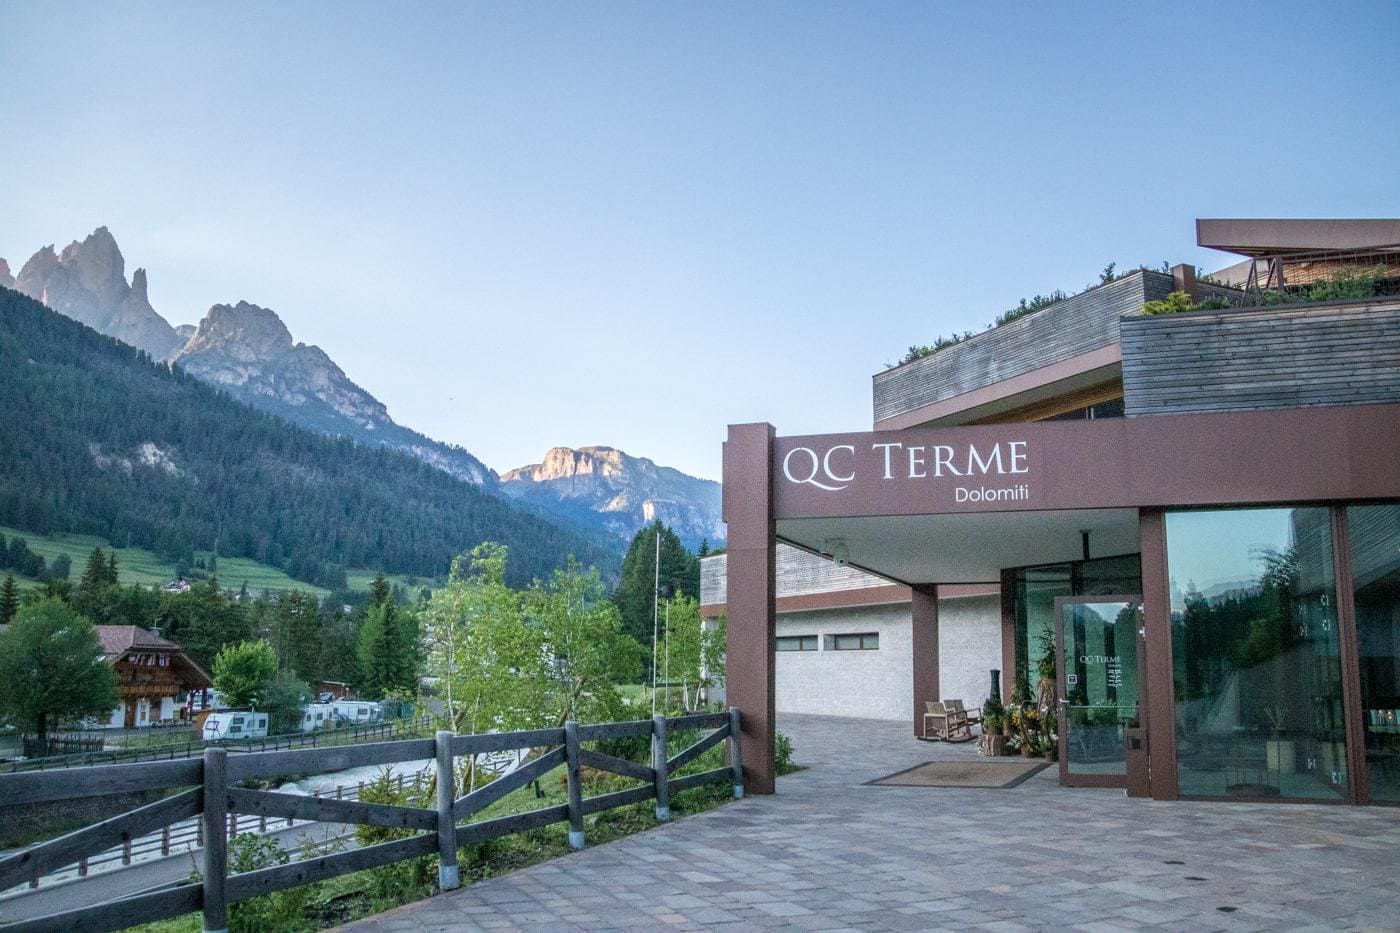 entrance to QC Terme Dolomiti in Trentino region